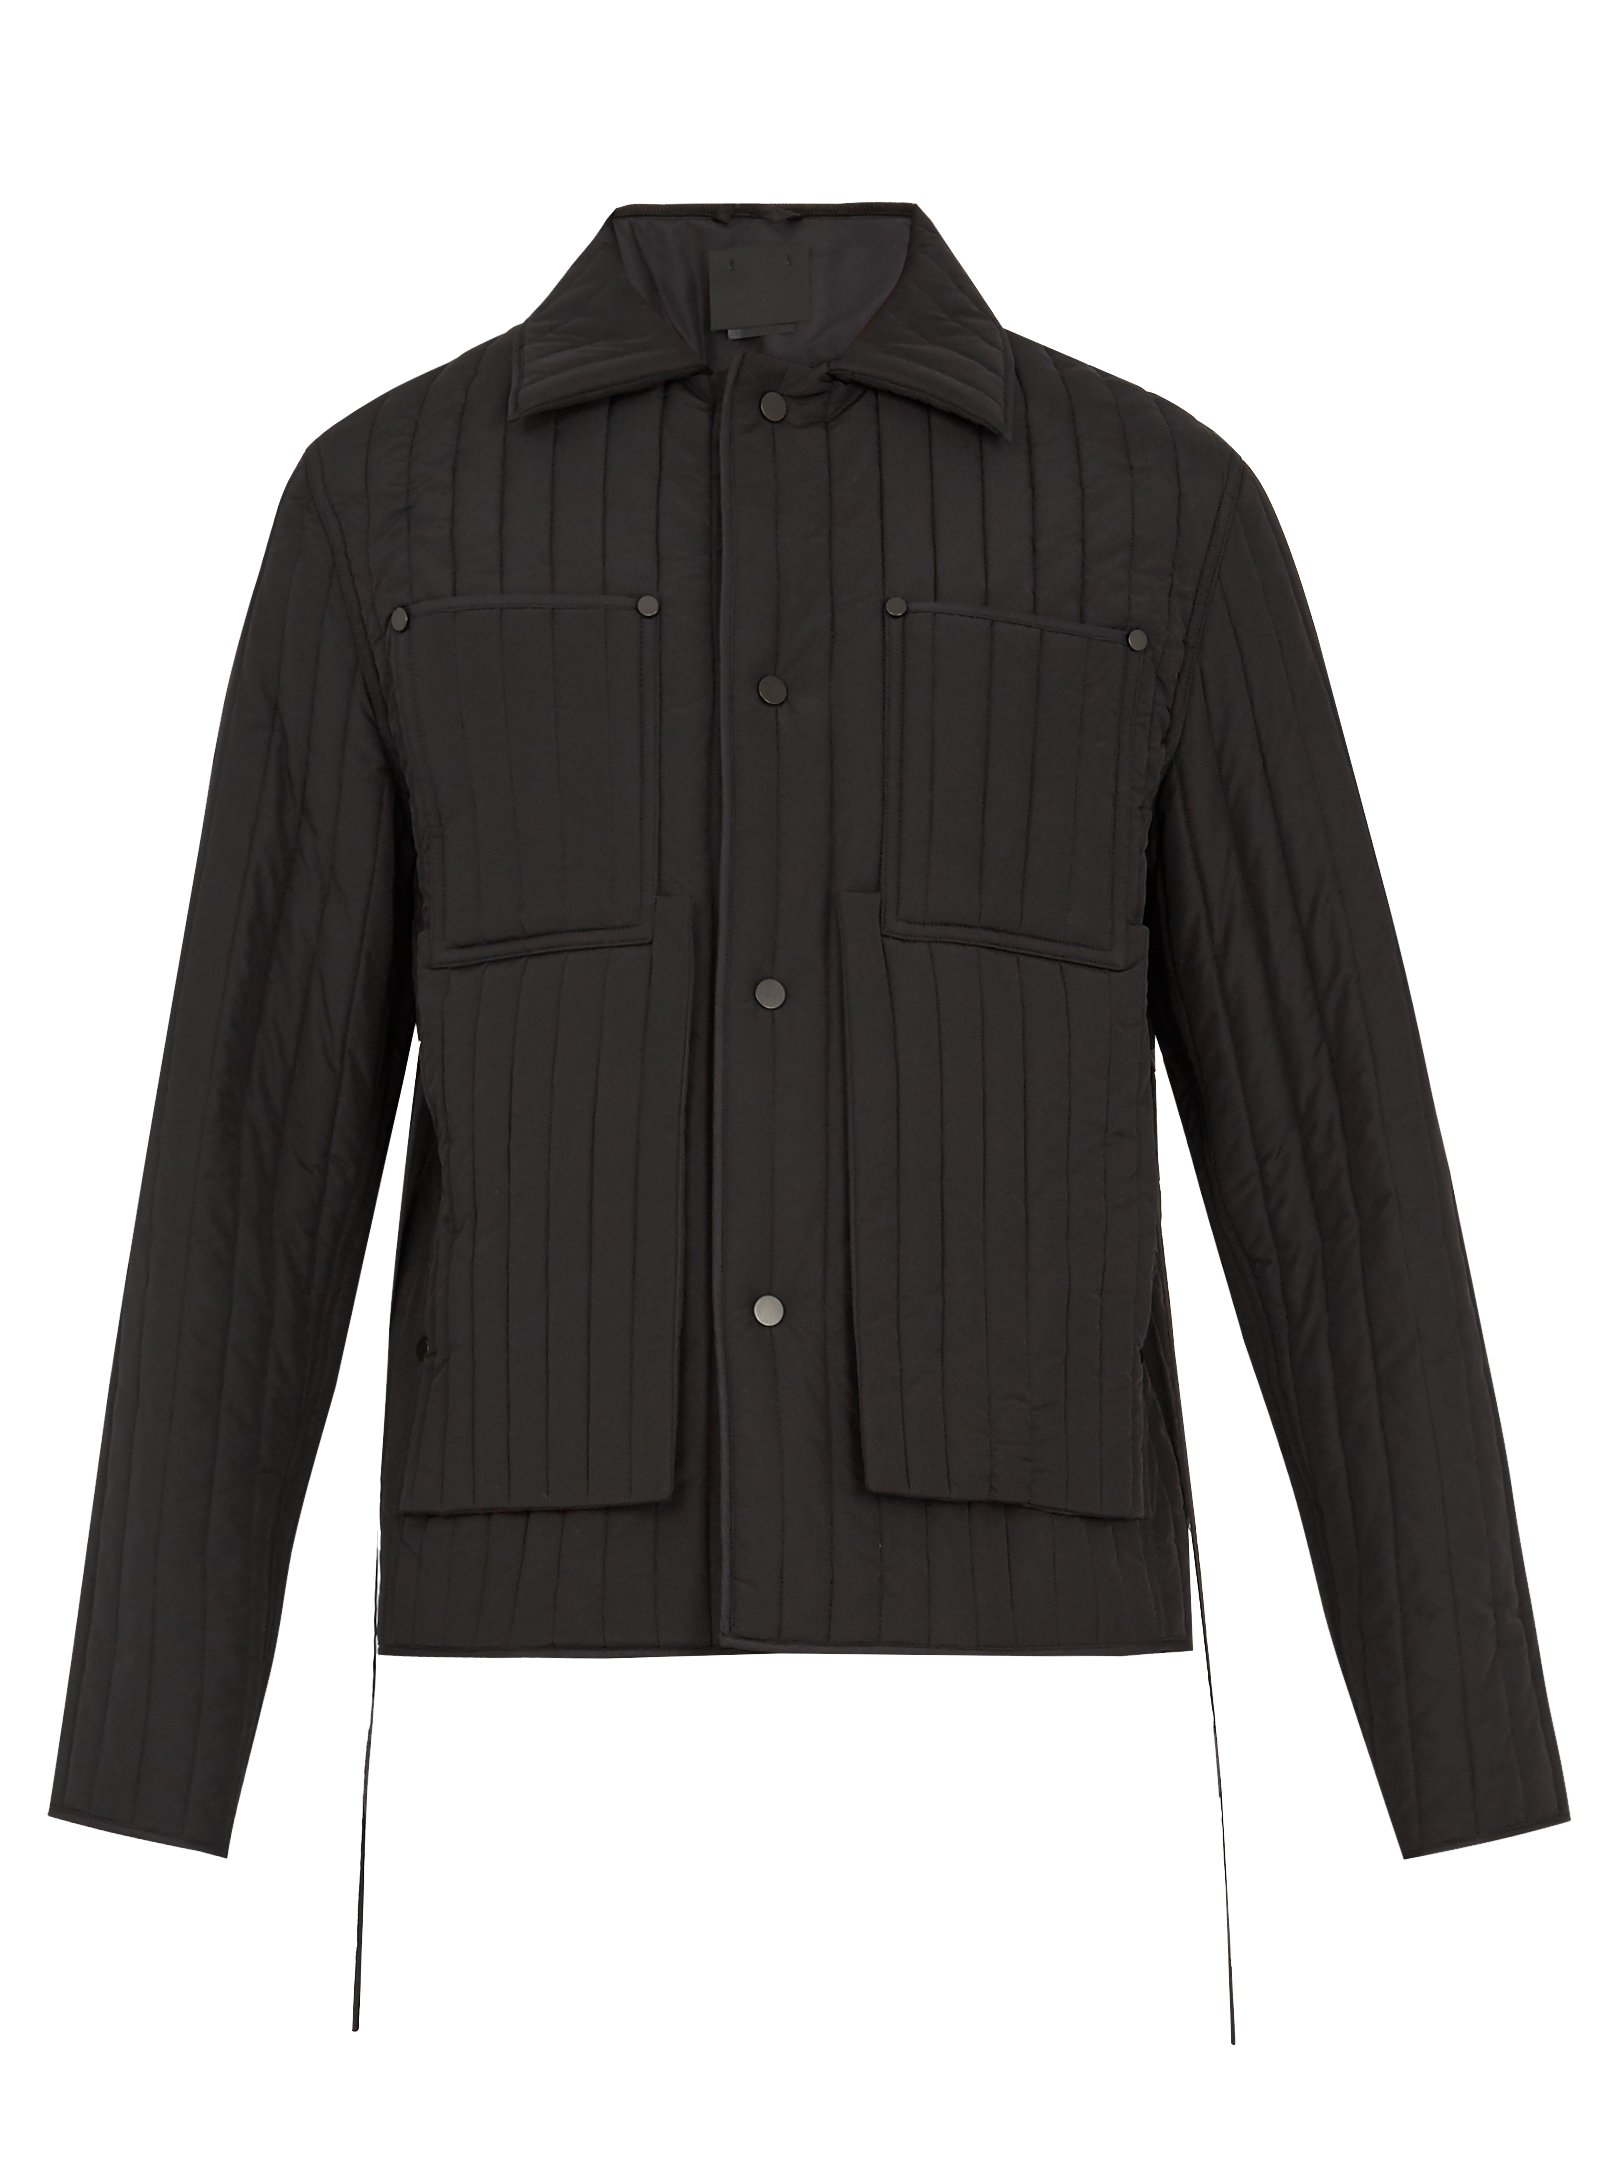 Hoodie Flight jacket Lacoste Coat - jacket png download - 1620*2160 ...